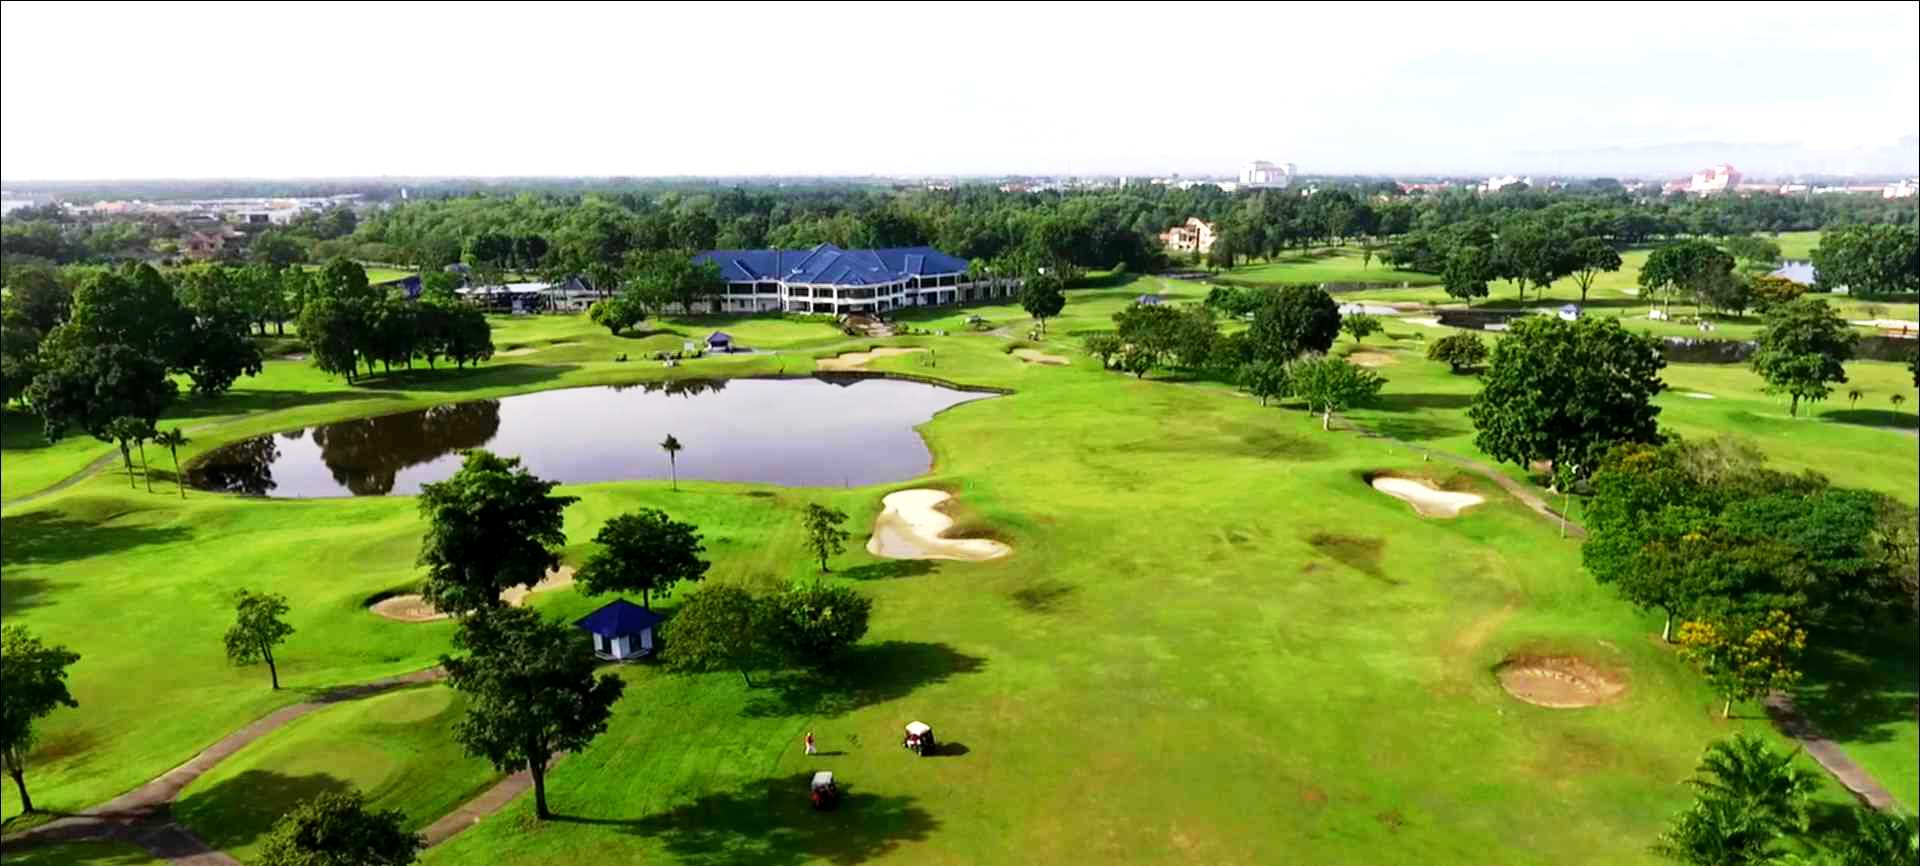 Penang golf resort bertam